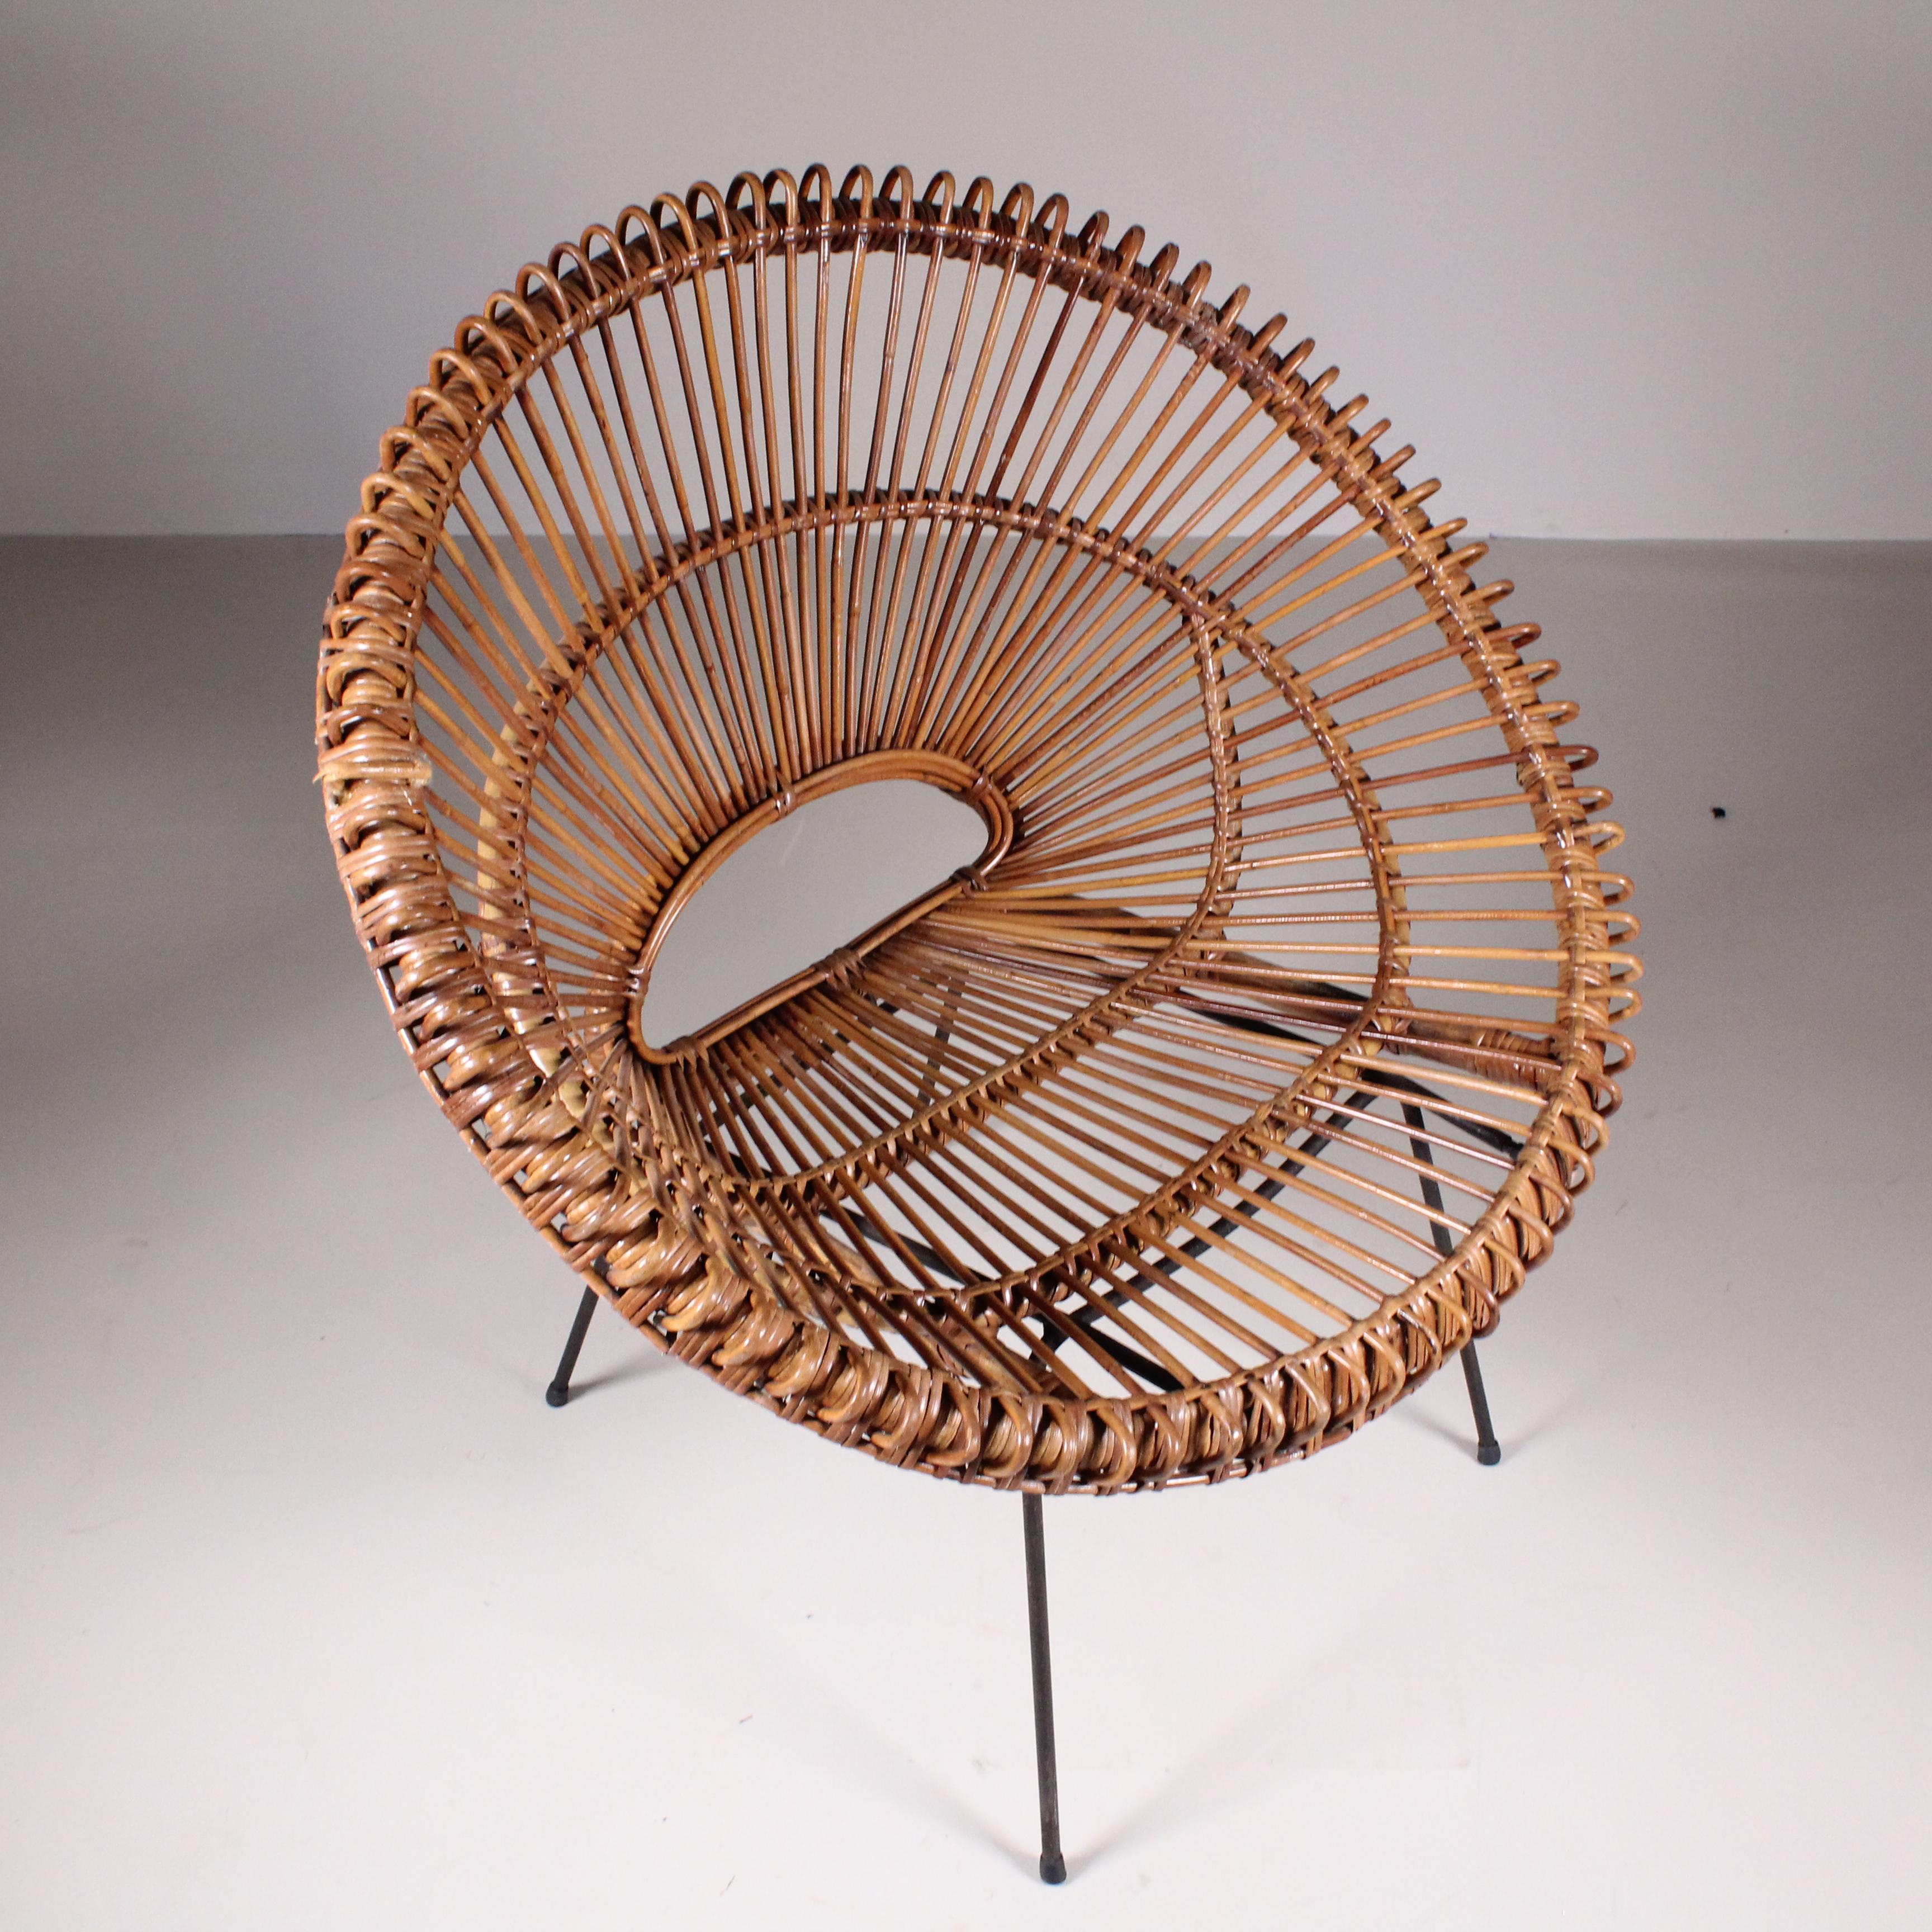 Ce fauteuil en rotin fabriqué en Italie dans les années 1960 représente une élégante fusion entre l'artisanat traditionnel et le design moderne. Le rotin, un matériau naturel et flexible dérivé du palmier, était souvent tressé à la main pour créer